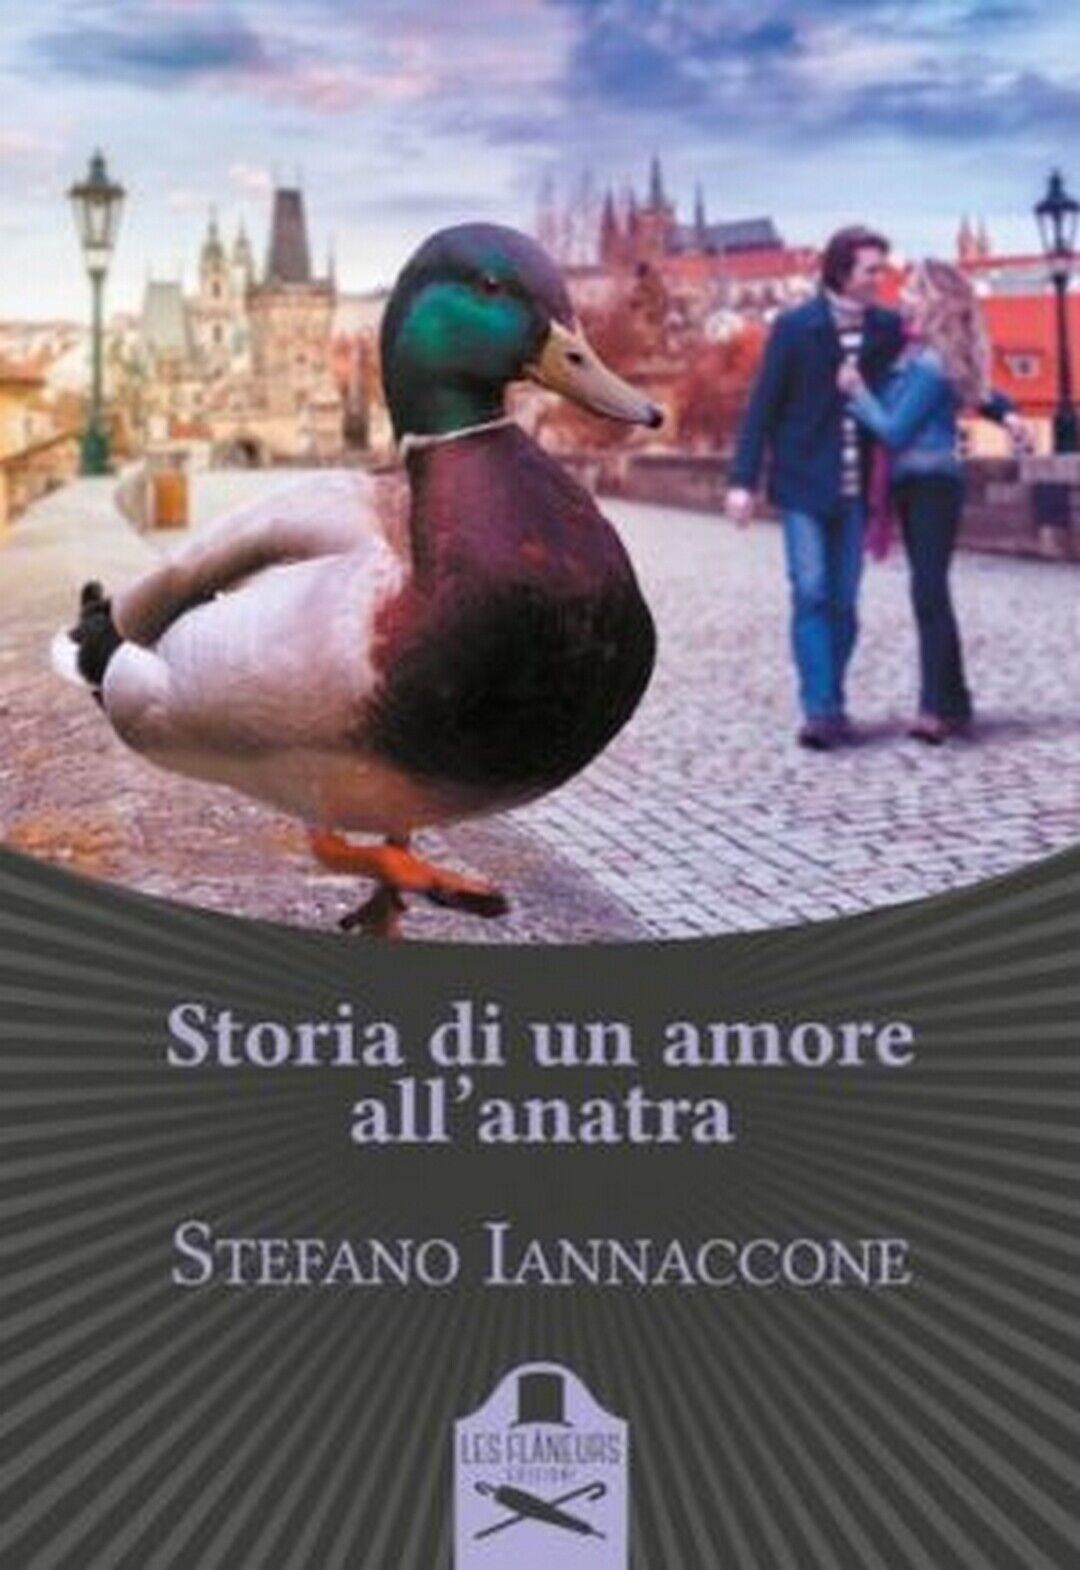 Storia di un amore alL'anatra  di Stefano Iannaccone ,  Flaneurs libro usato